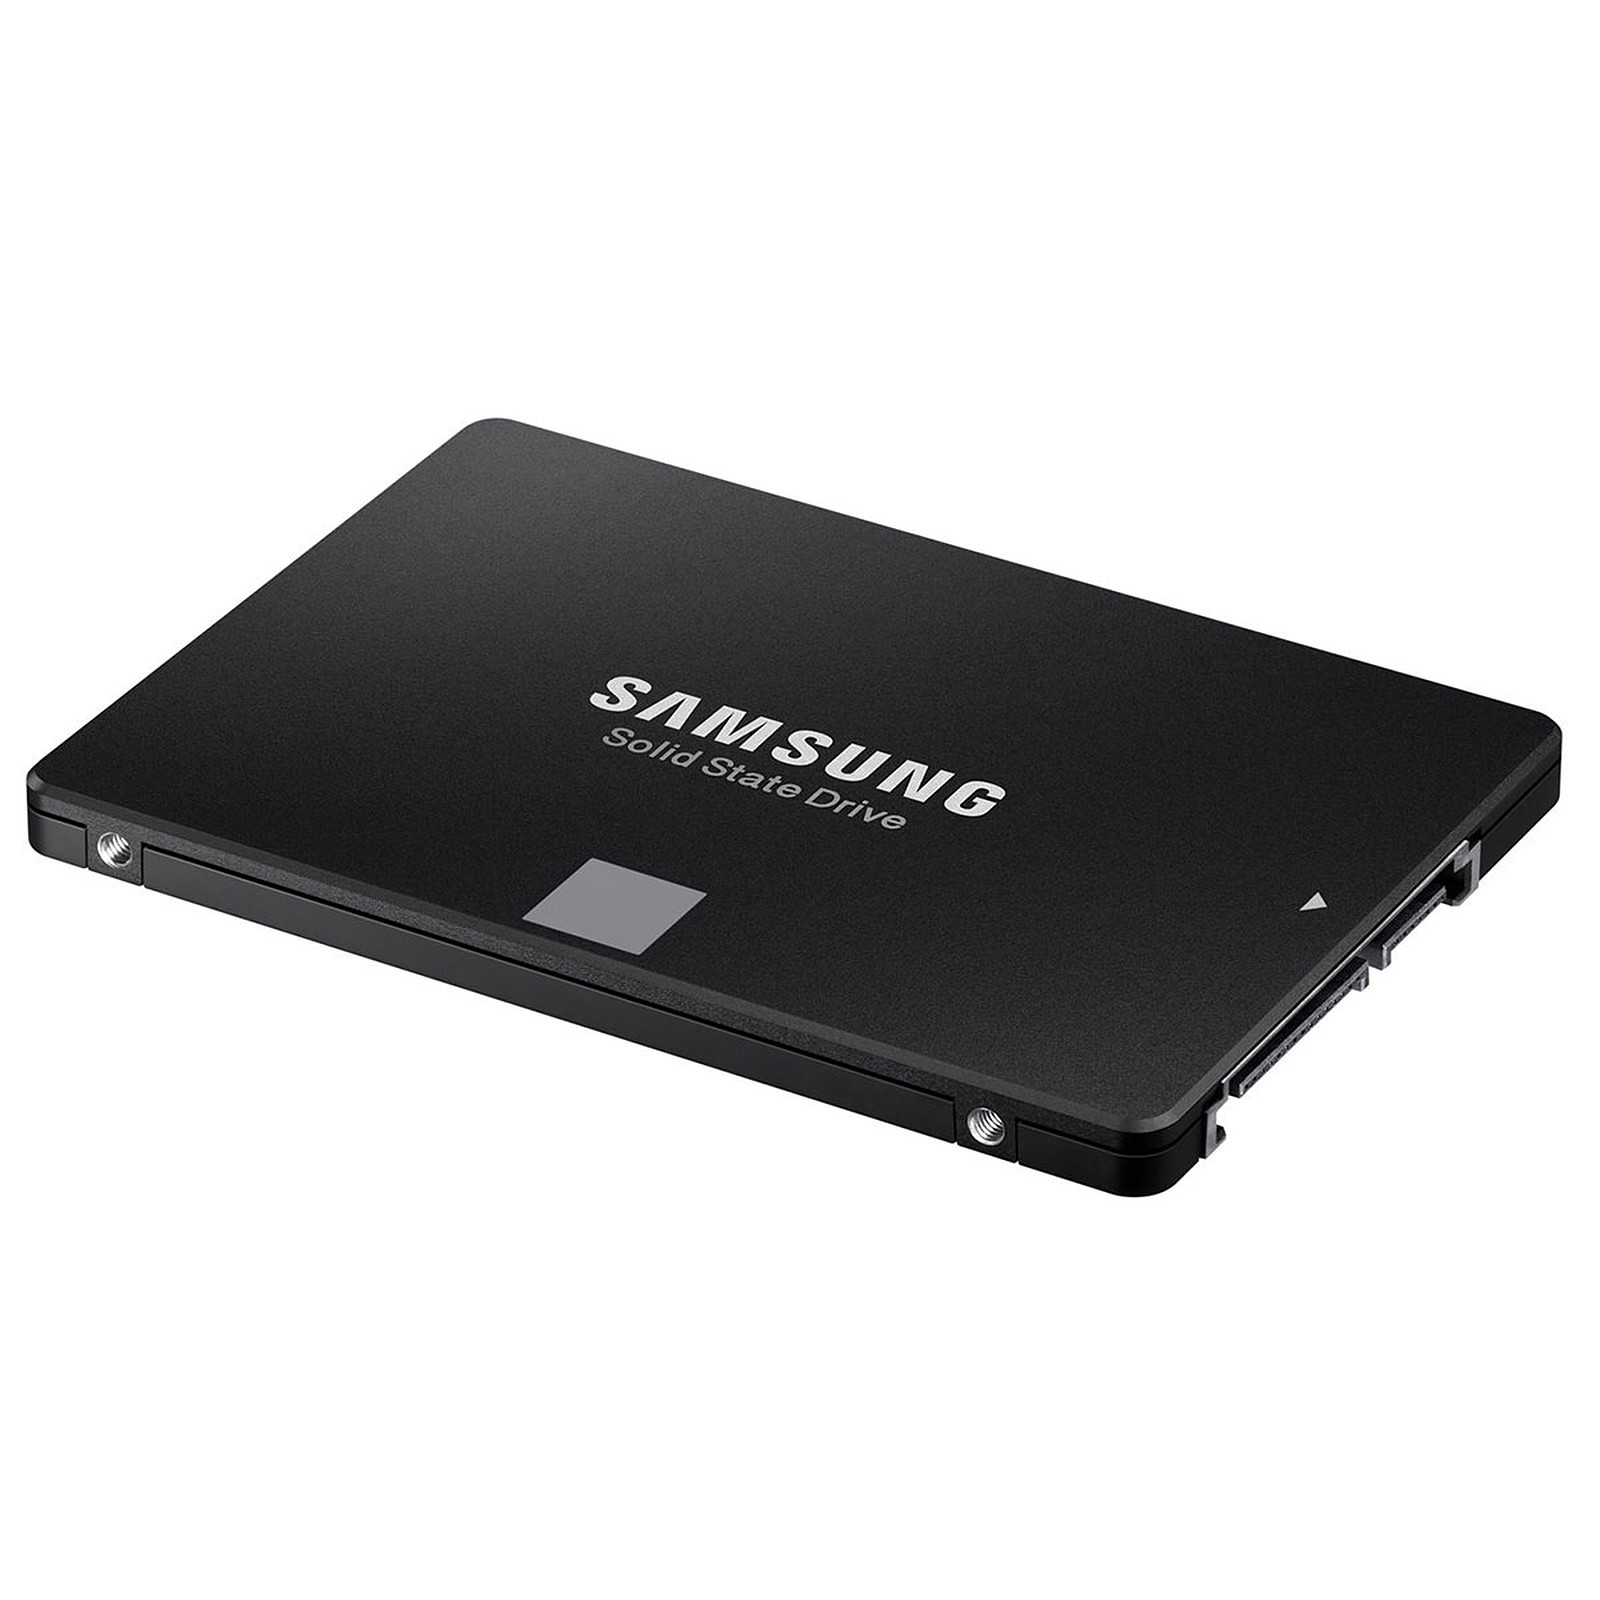 L'excellent SSD externe Samsung T5 est enfin de retour à un bon prix